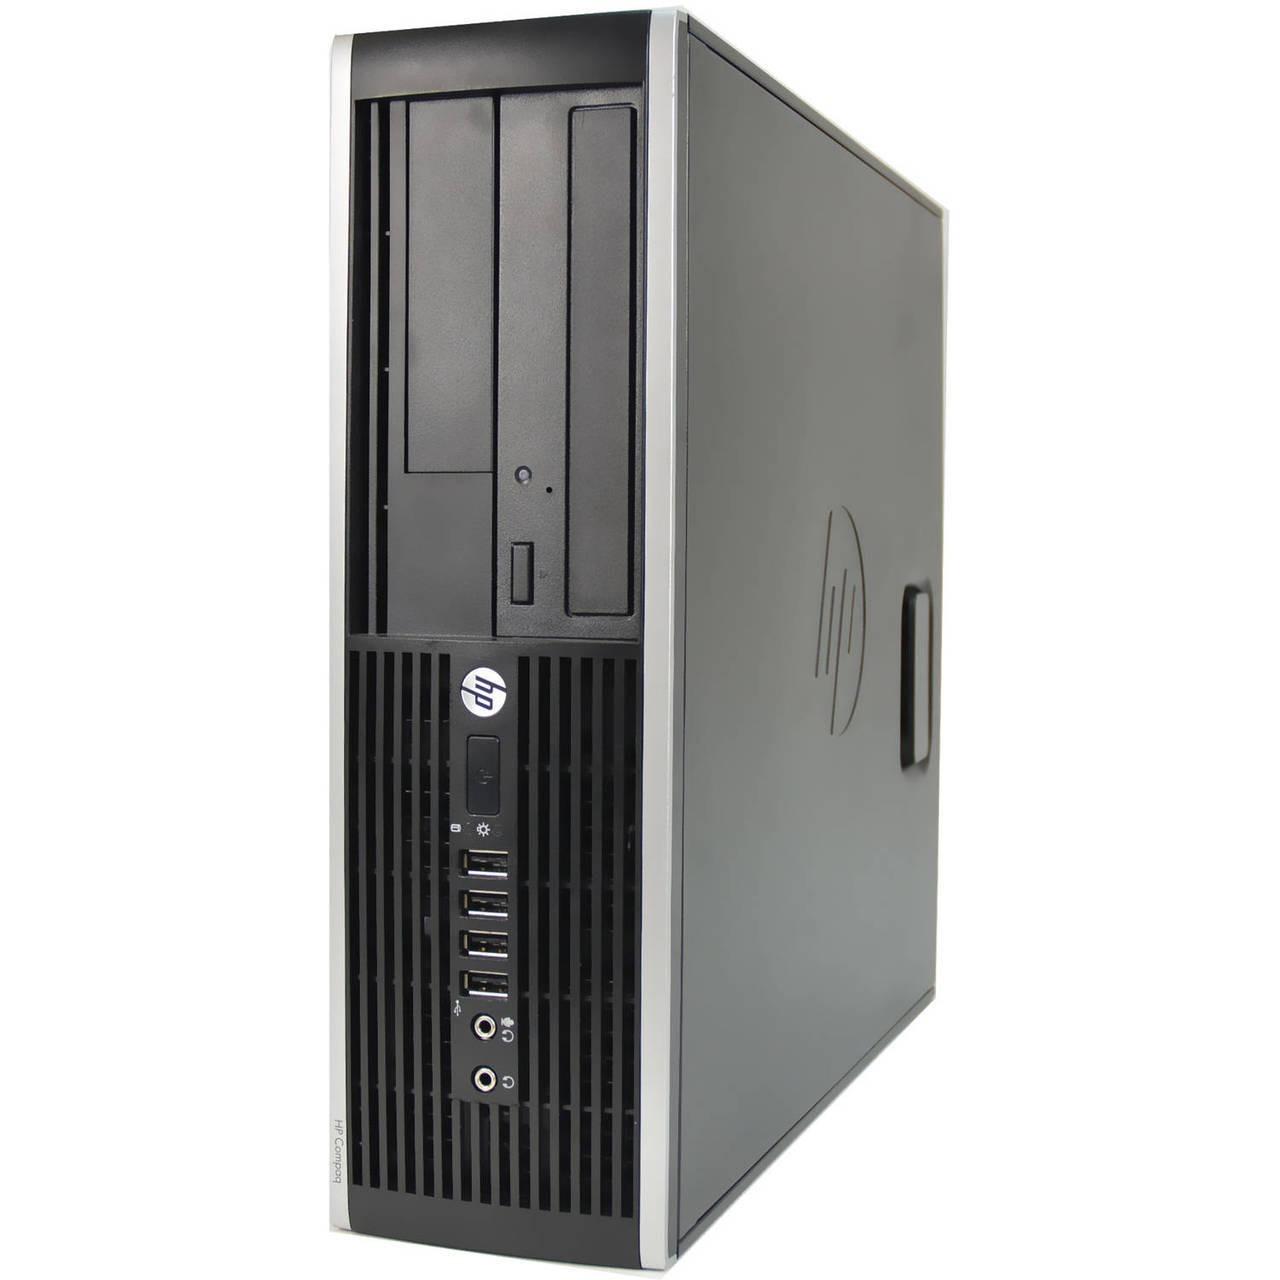 Cây máy tính để bàn HP 6200 Pro Sff (CPU i5 2400, Ram 4GB, HDD 250GB)